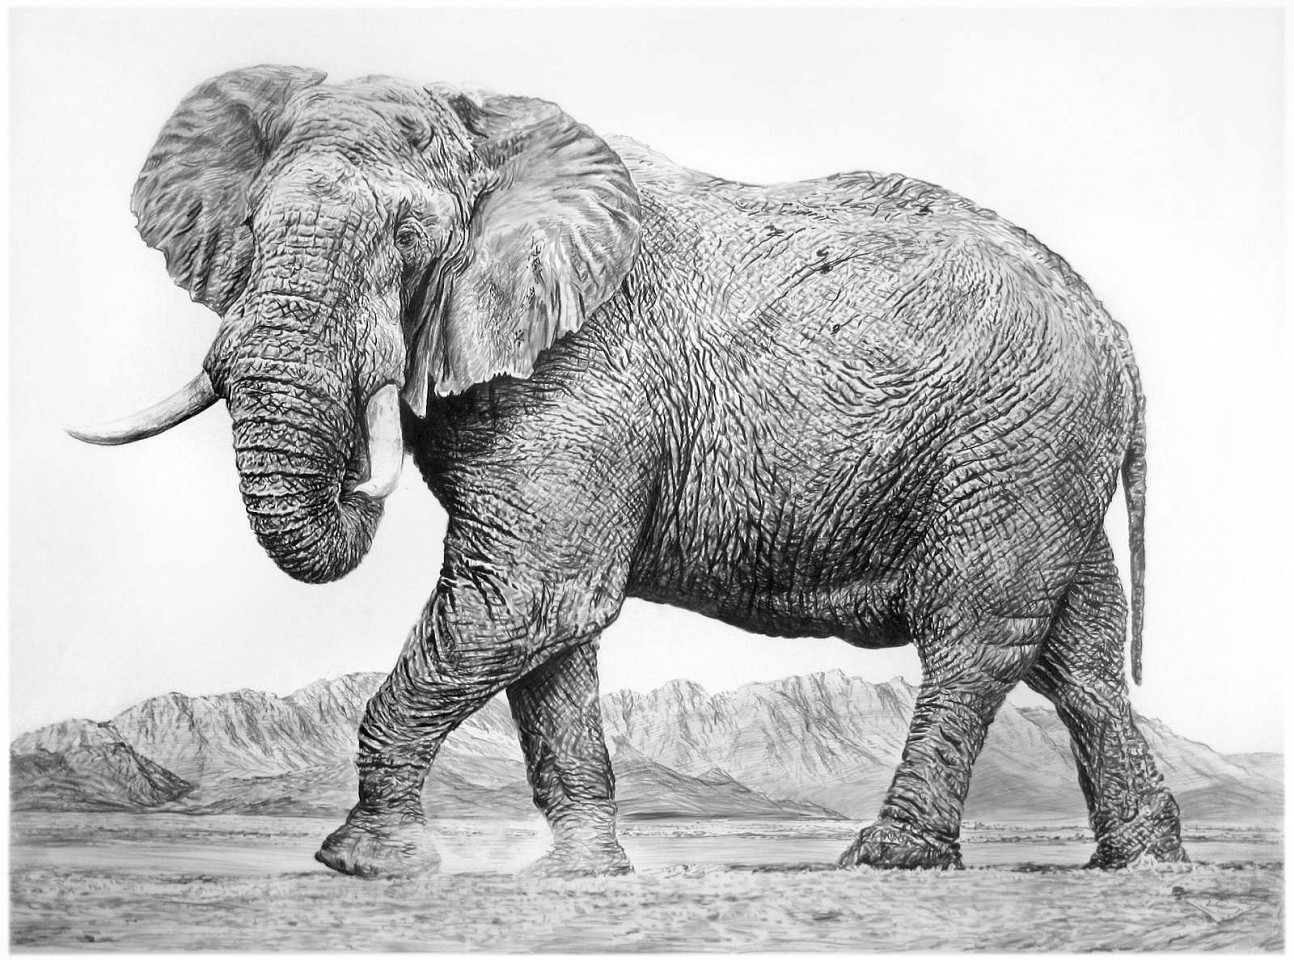 Rick Shaefer
Elephant II, 2016
shaef044
charcoal on vellum, 45 x 65 inches